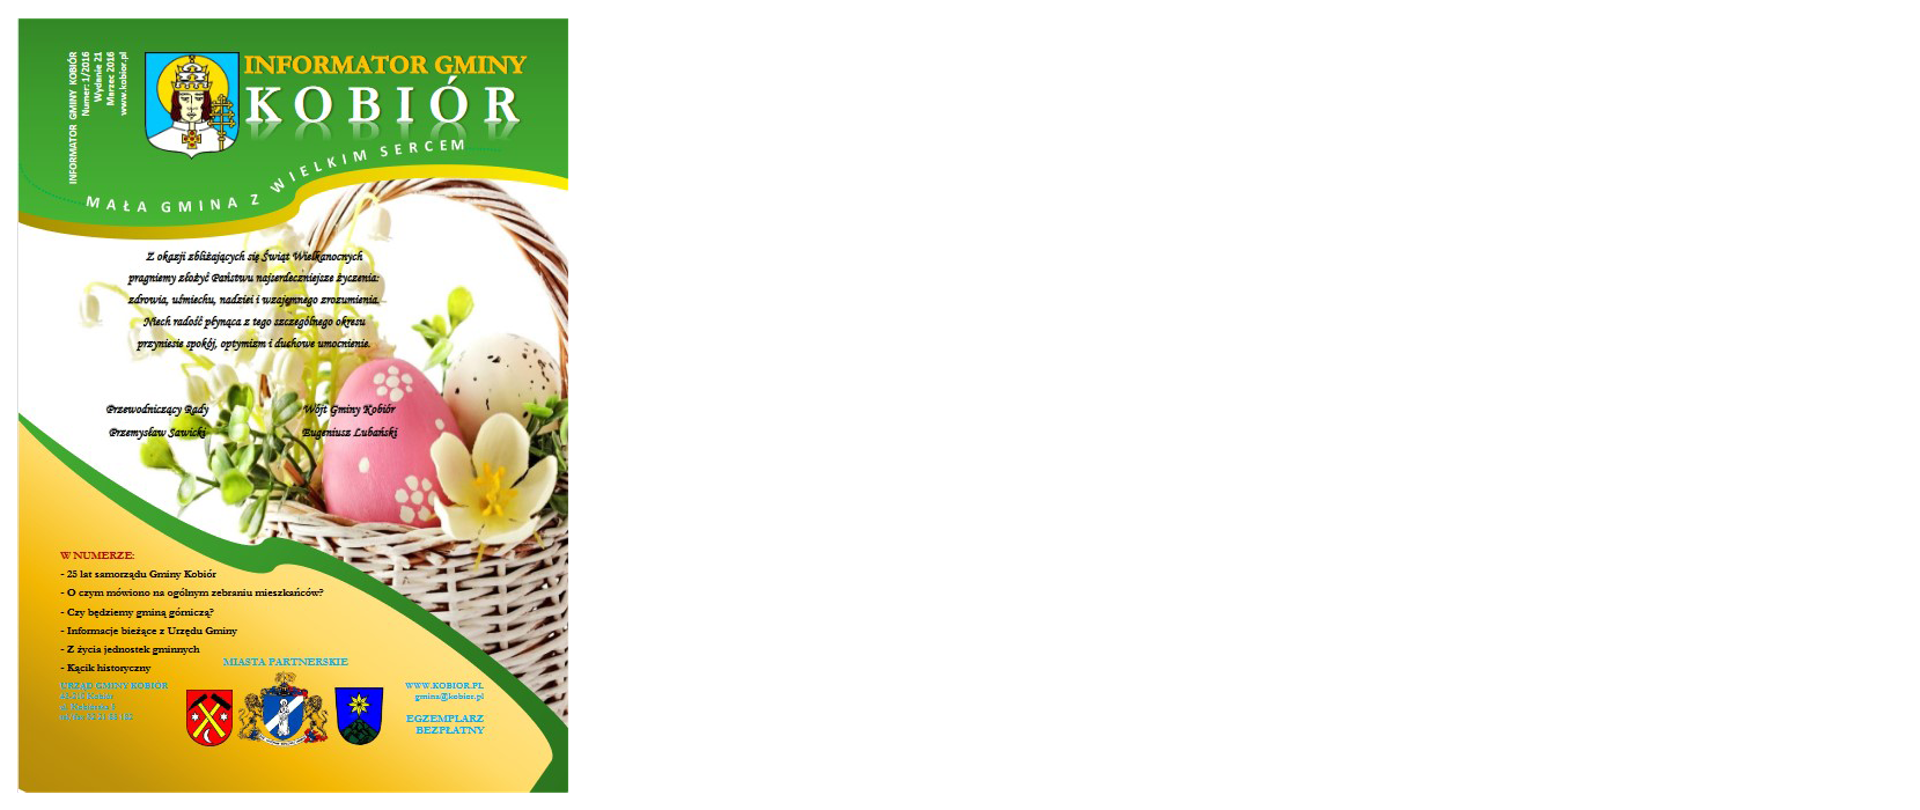 Zdjęcie przedstawia okładkę informatora Gminy Kobiór z marca 2016 roku na której widać Herby Gminy Kobiór oraz miast partnerskich i koszyk wielkanocny